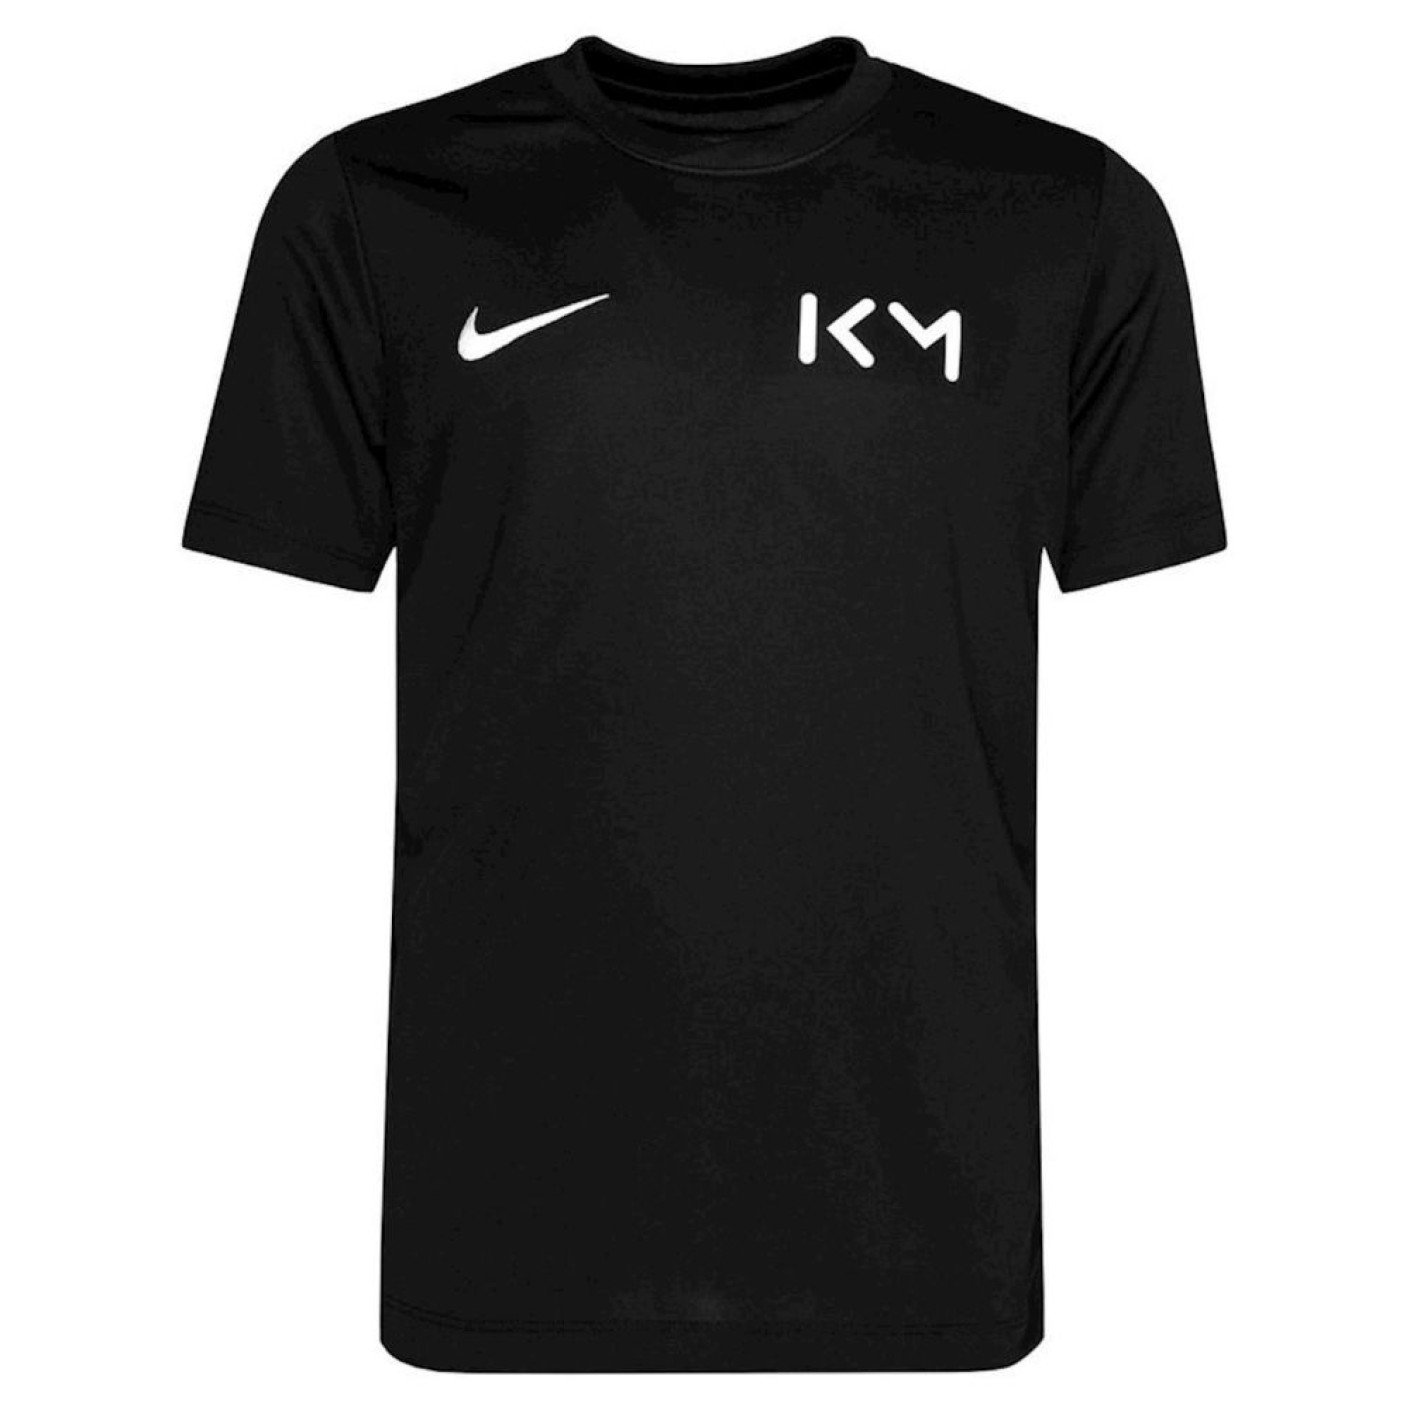 Nike Kylian Mbappé Voetbalshirt Kids Zwart